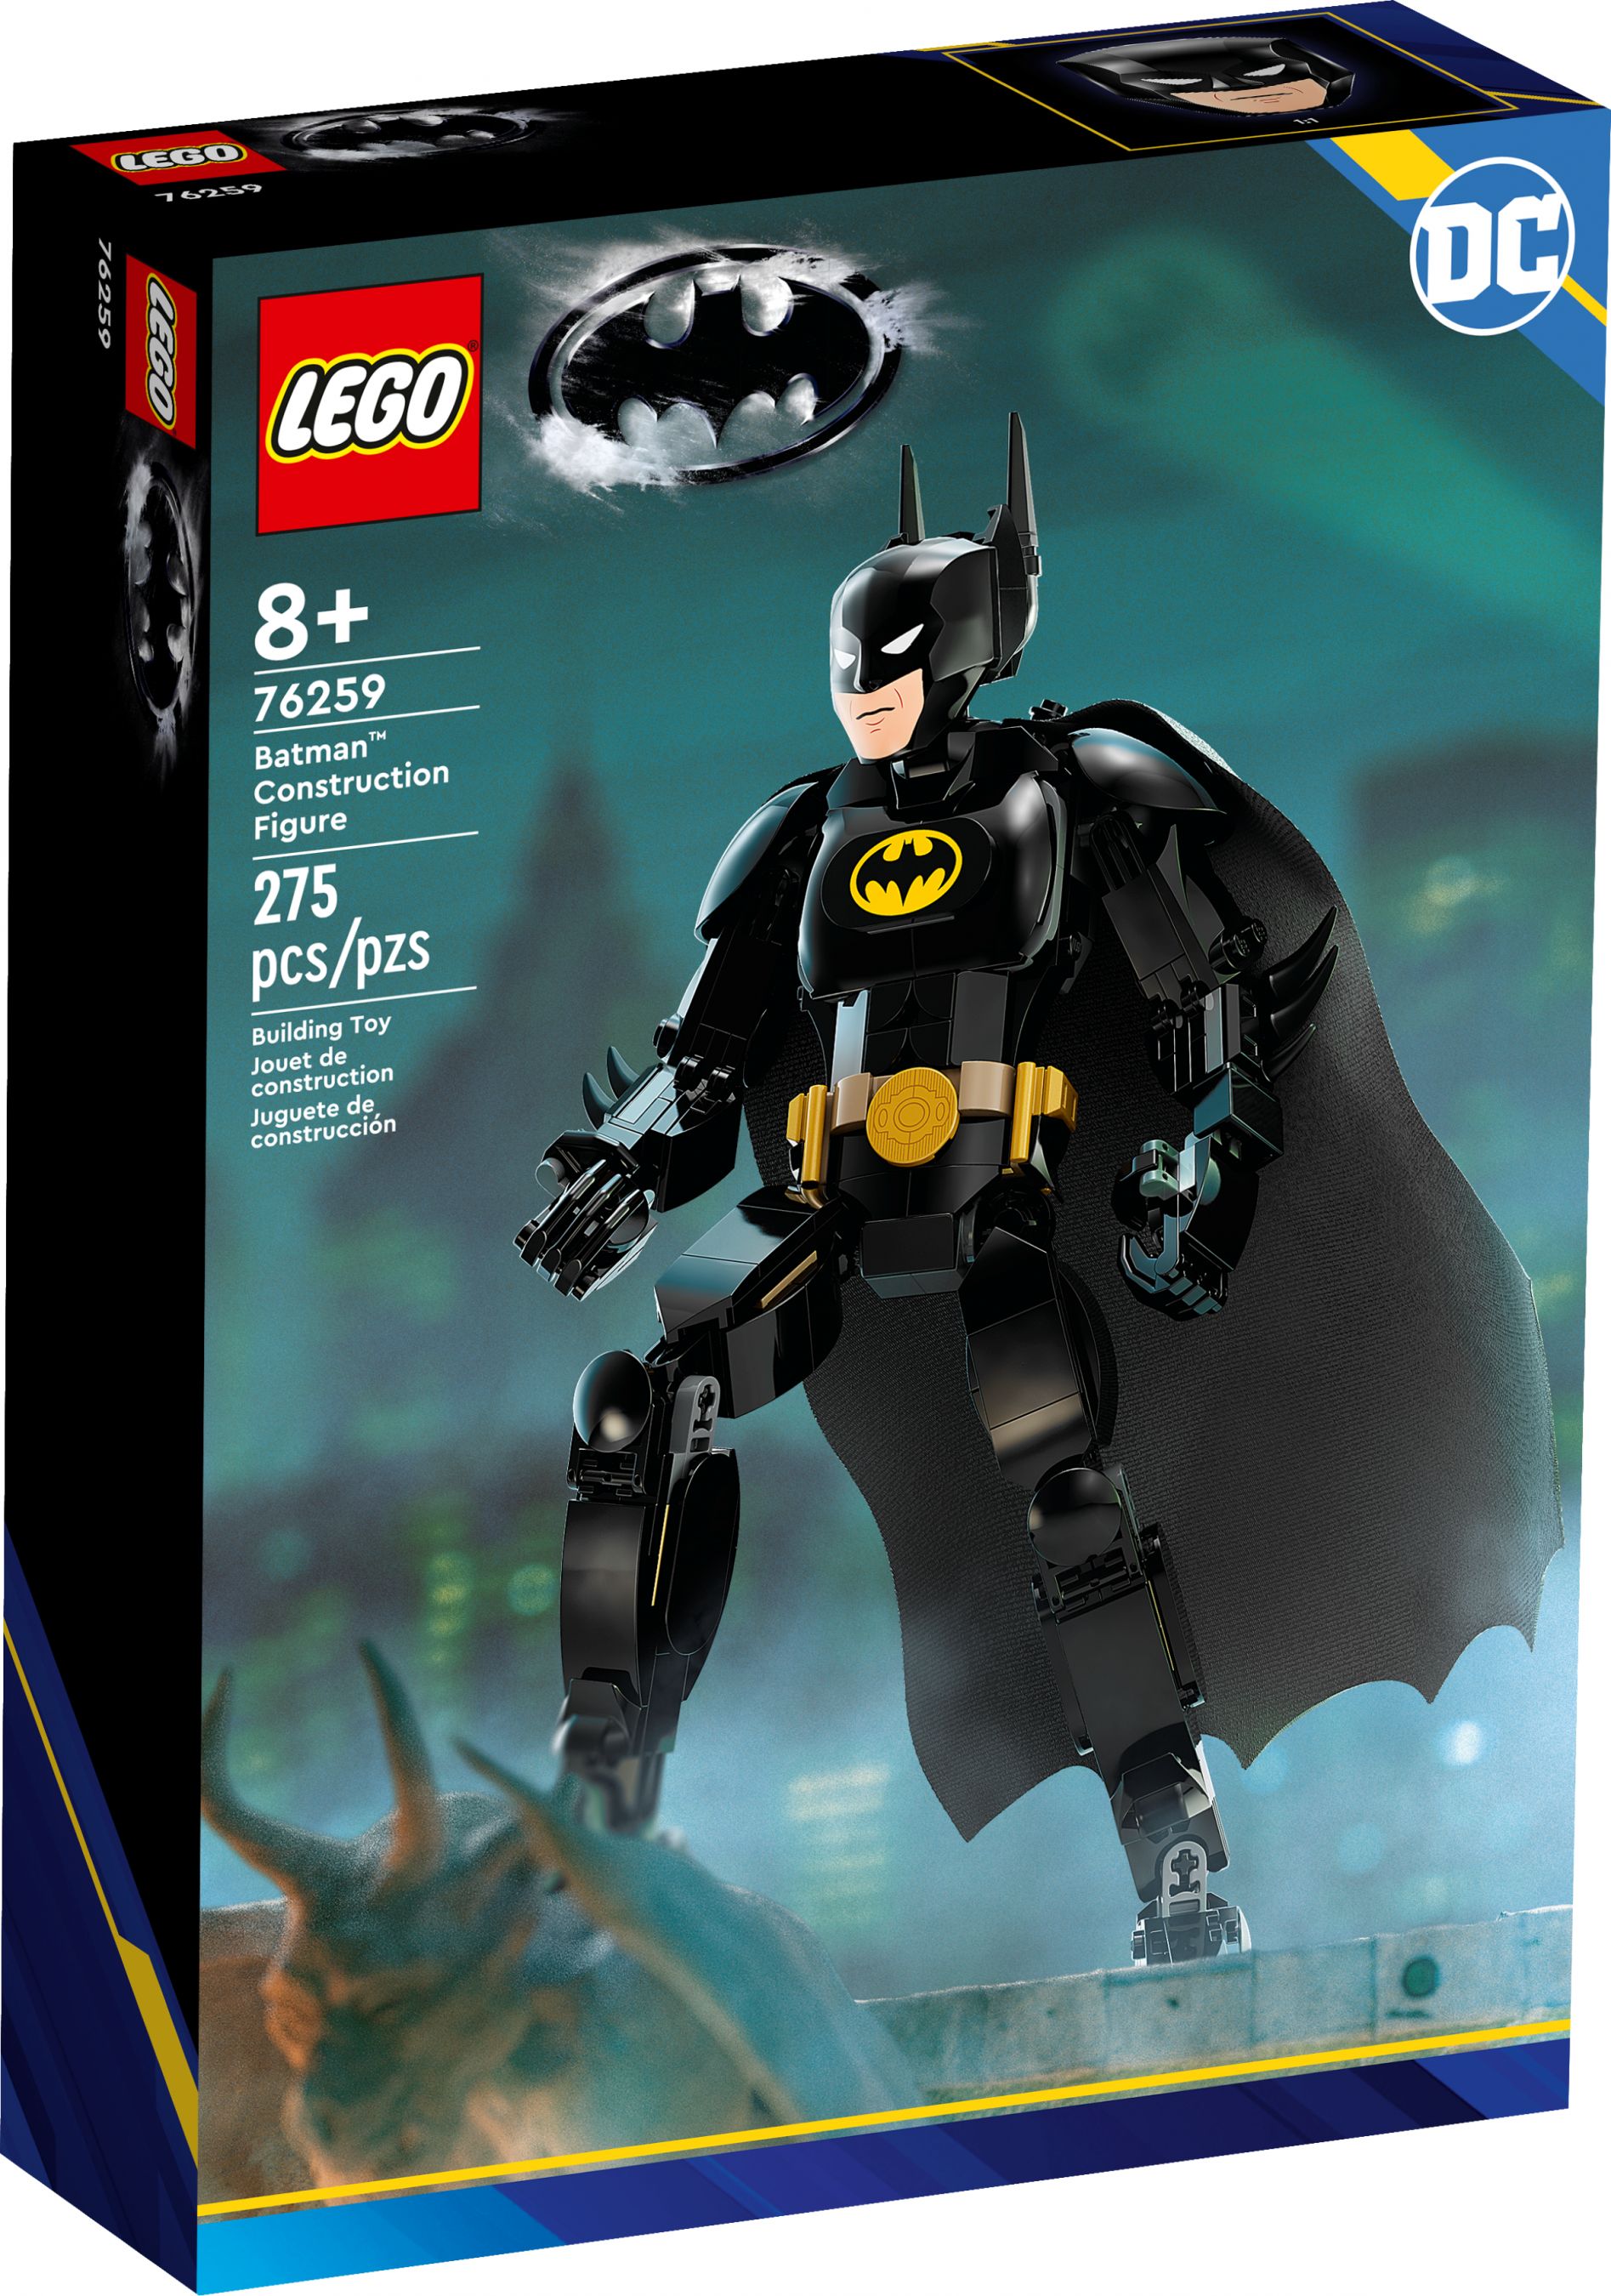 LEGO Super Heroes 76259 Batman™ Baufigur LEGO_76259_alt1.jpg